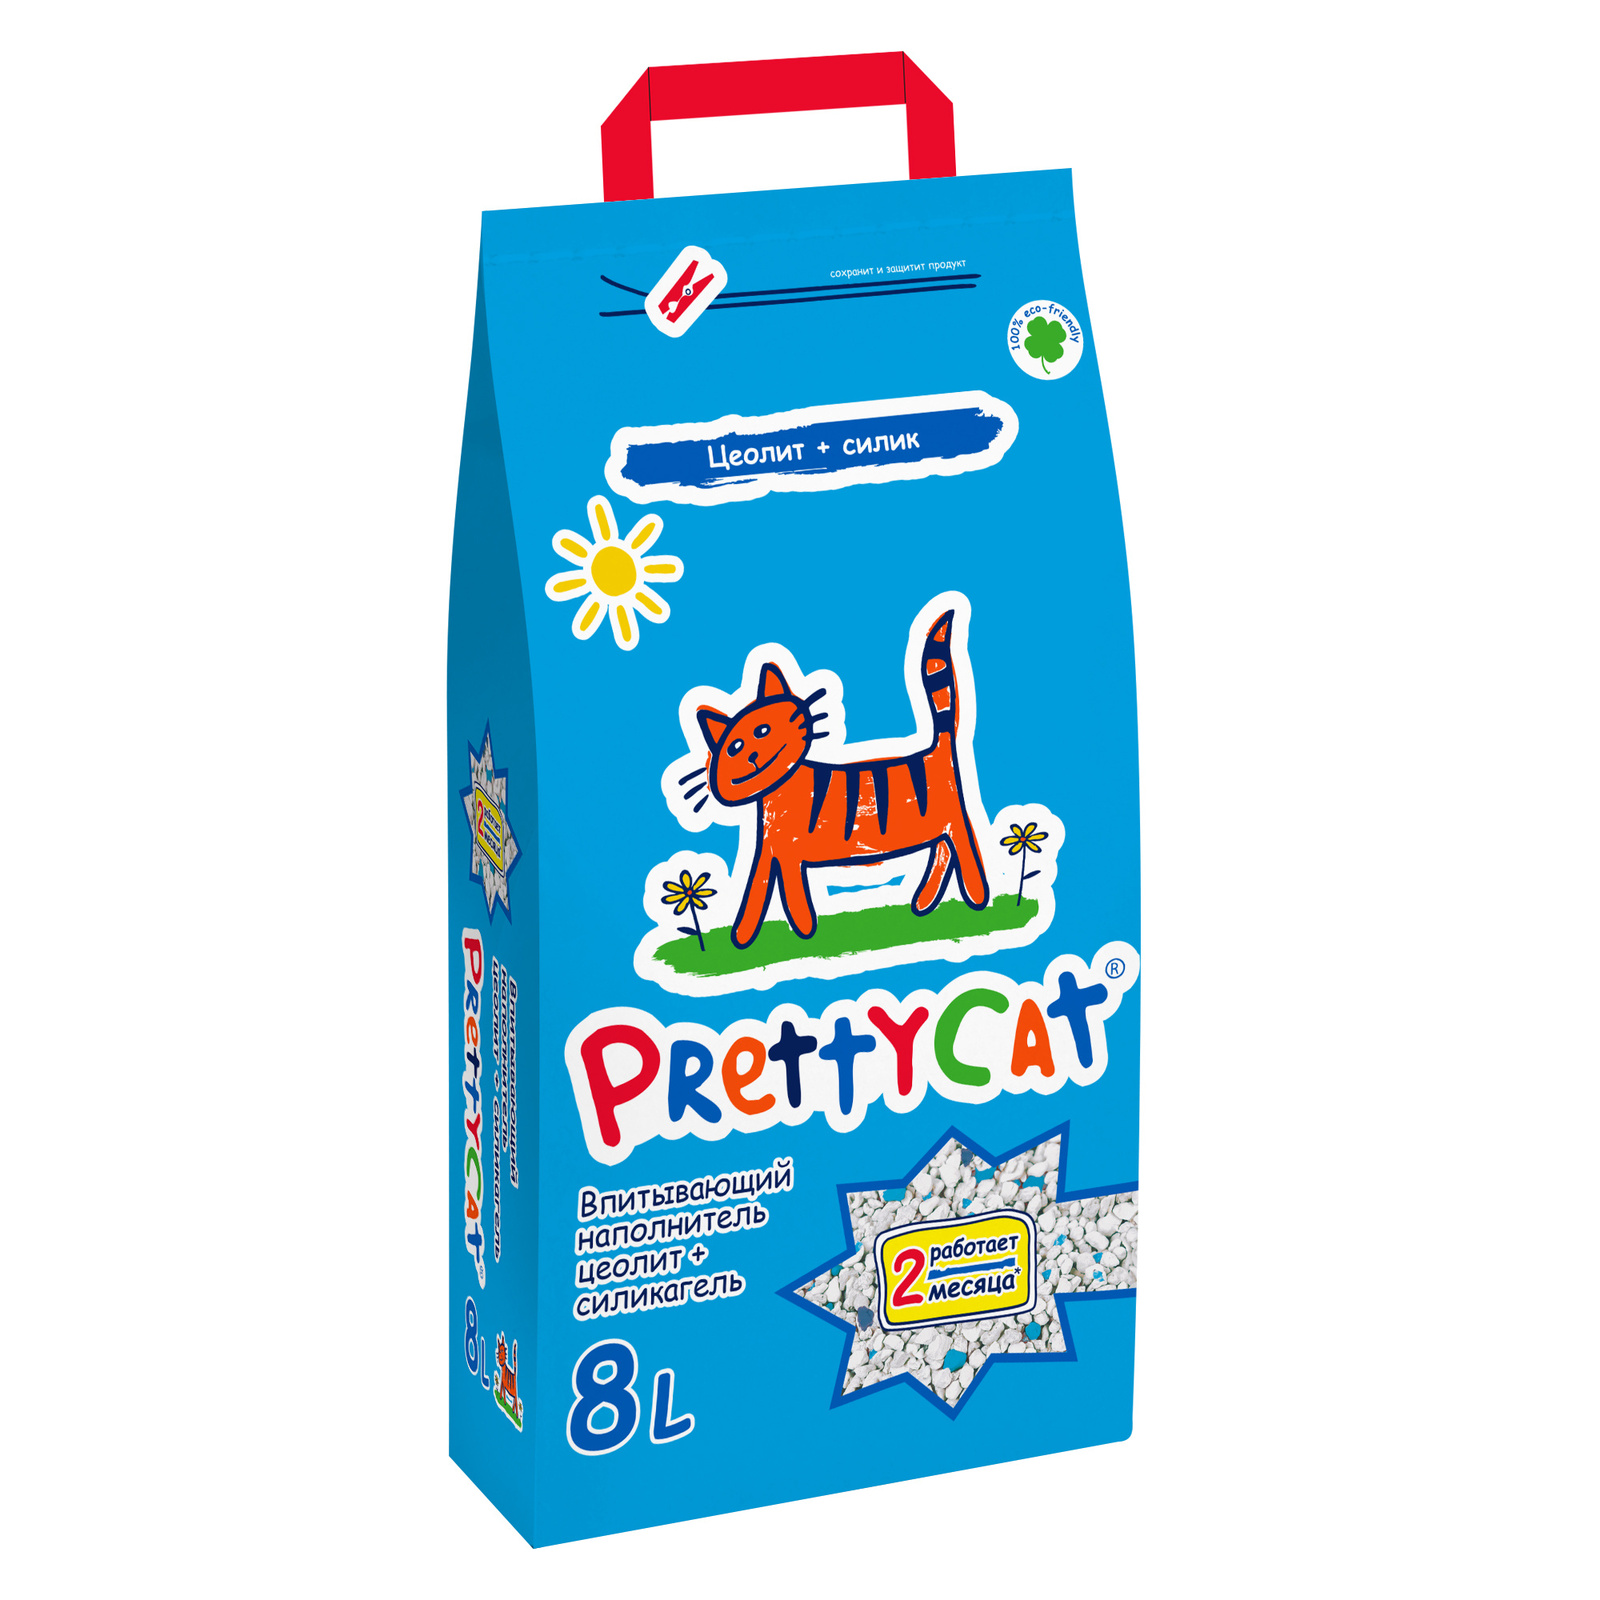 PrettyCat PrettyCat наполнитель впитывающий для кошачьих туалетов (4 кг) наполнитель впитывающий prettycat premium премиум цеолит силикагель 8л 4кг